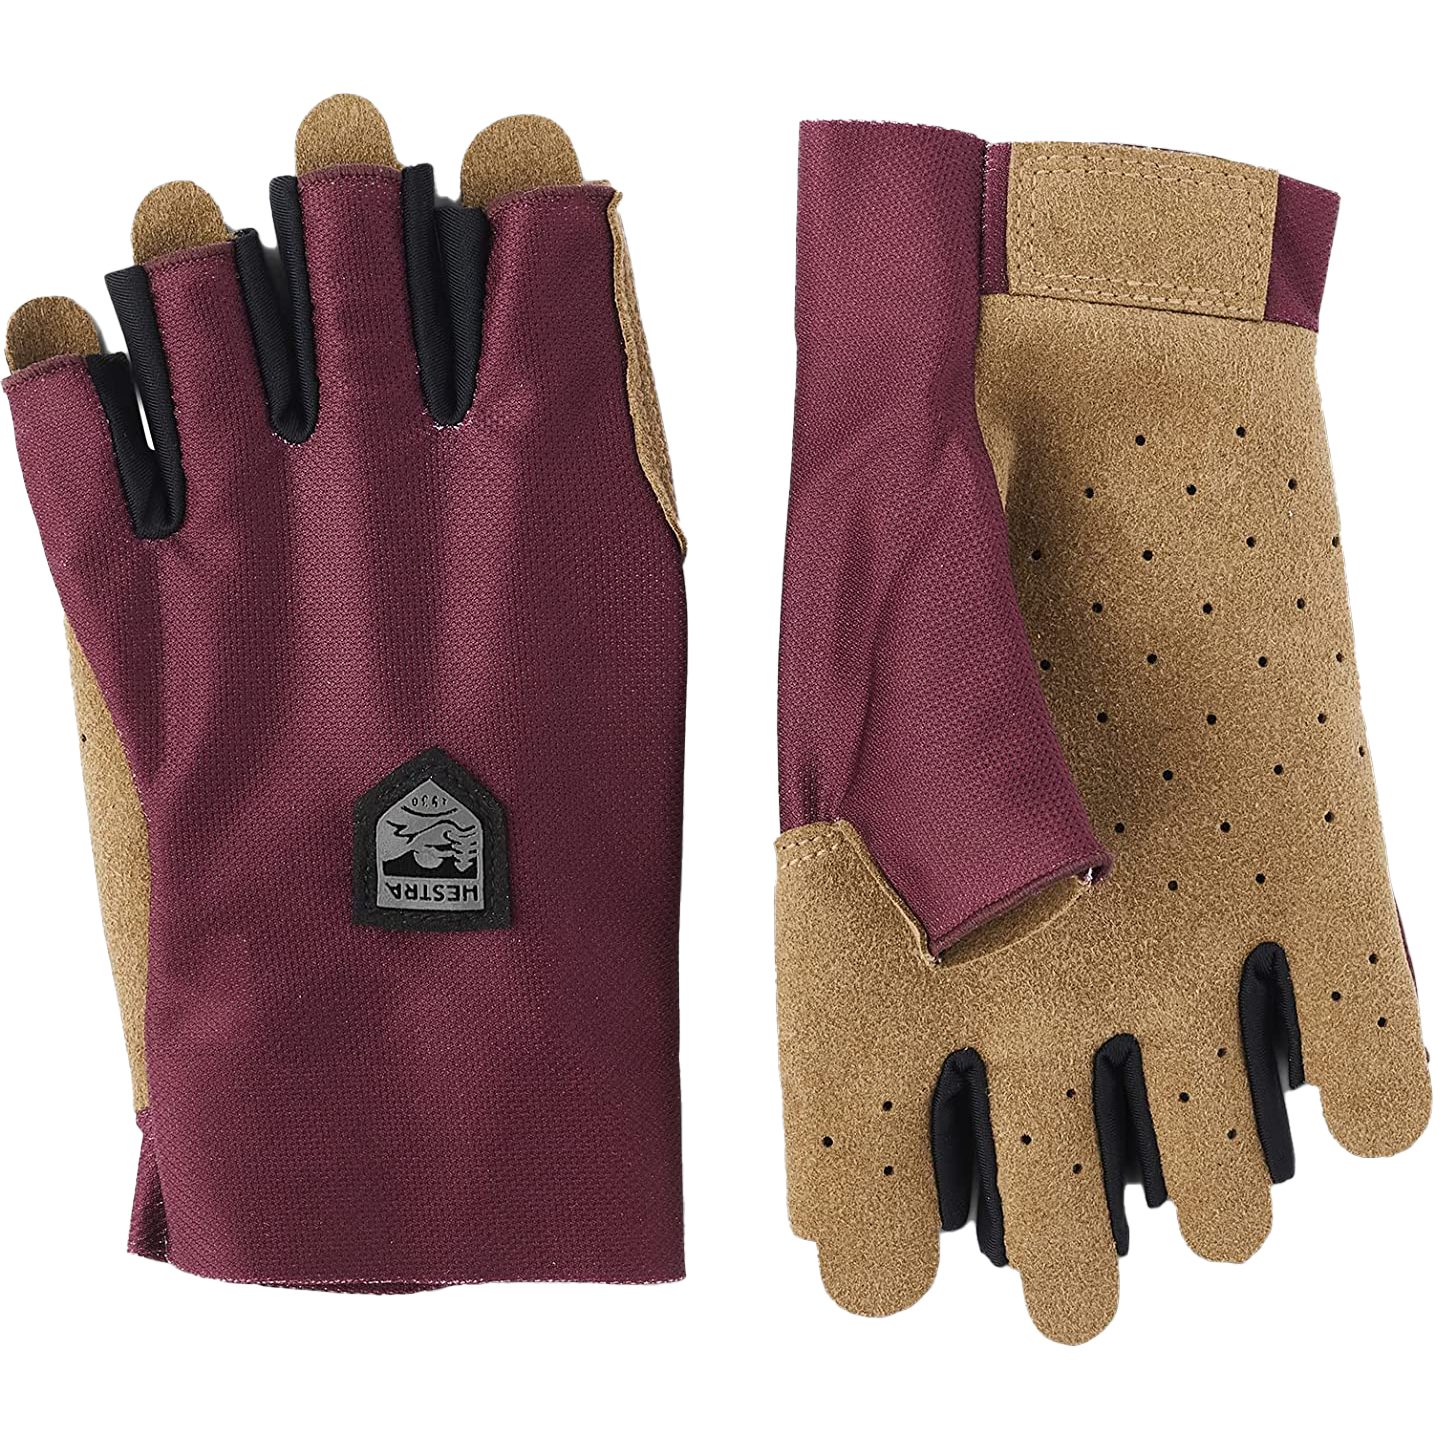 Productfoto van Hestra Ventair Short - 5 Finger Fietshandschoenen - donkerrood